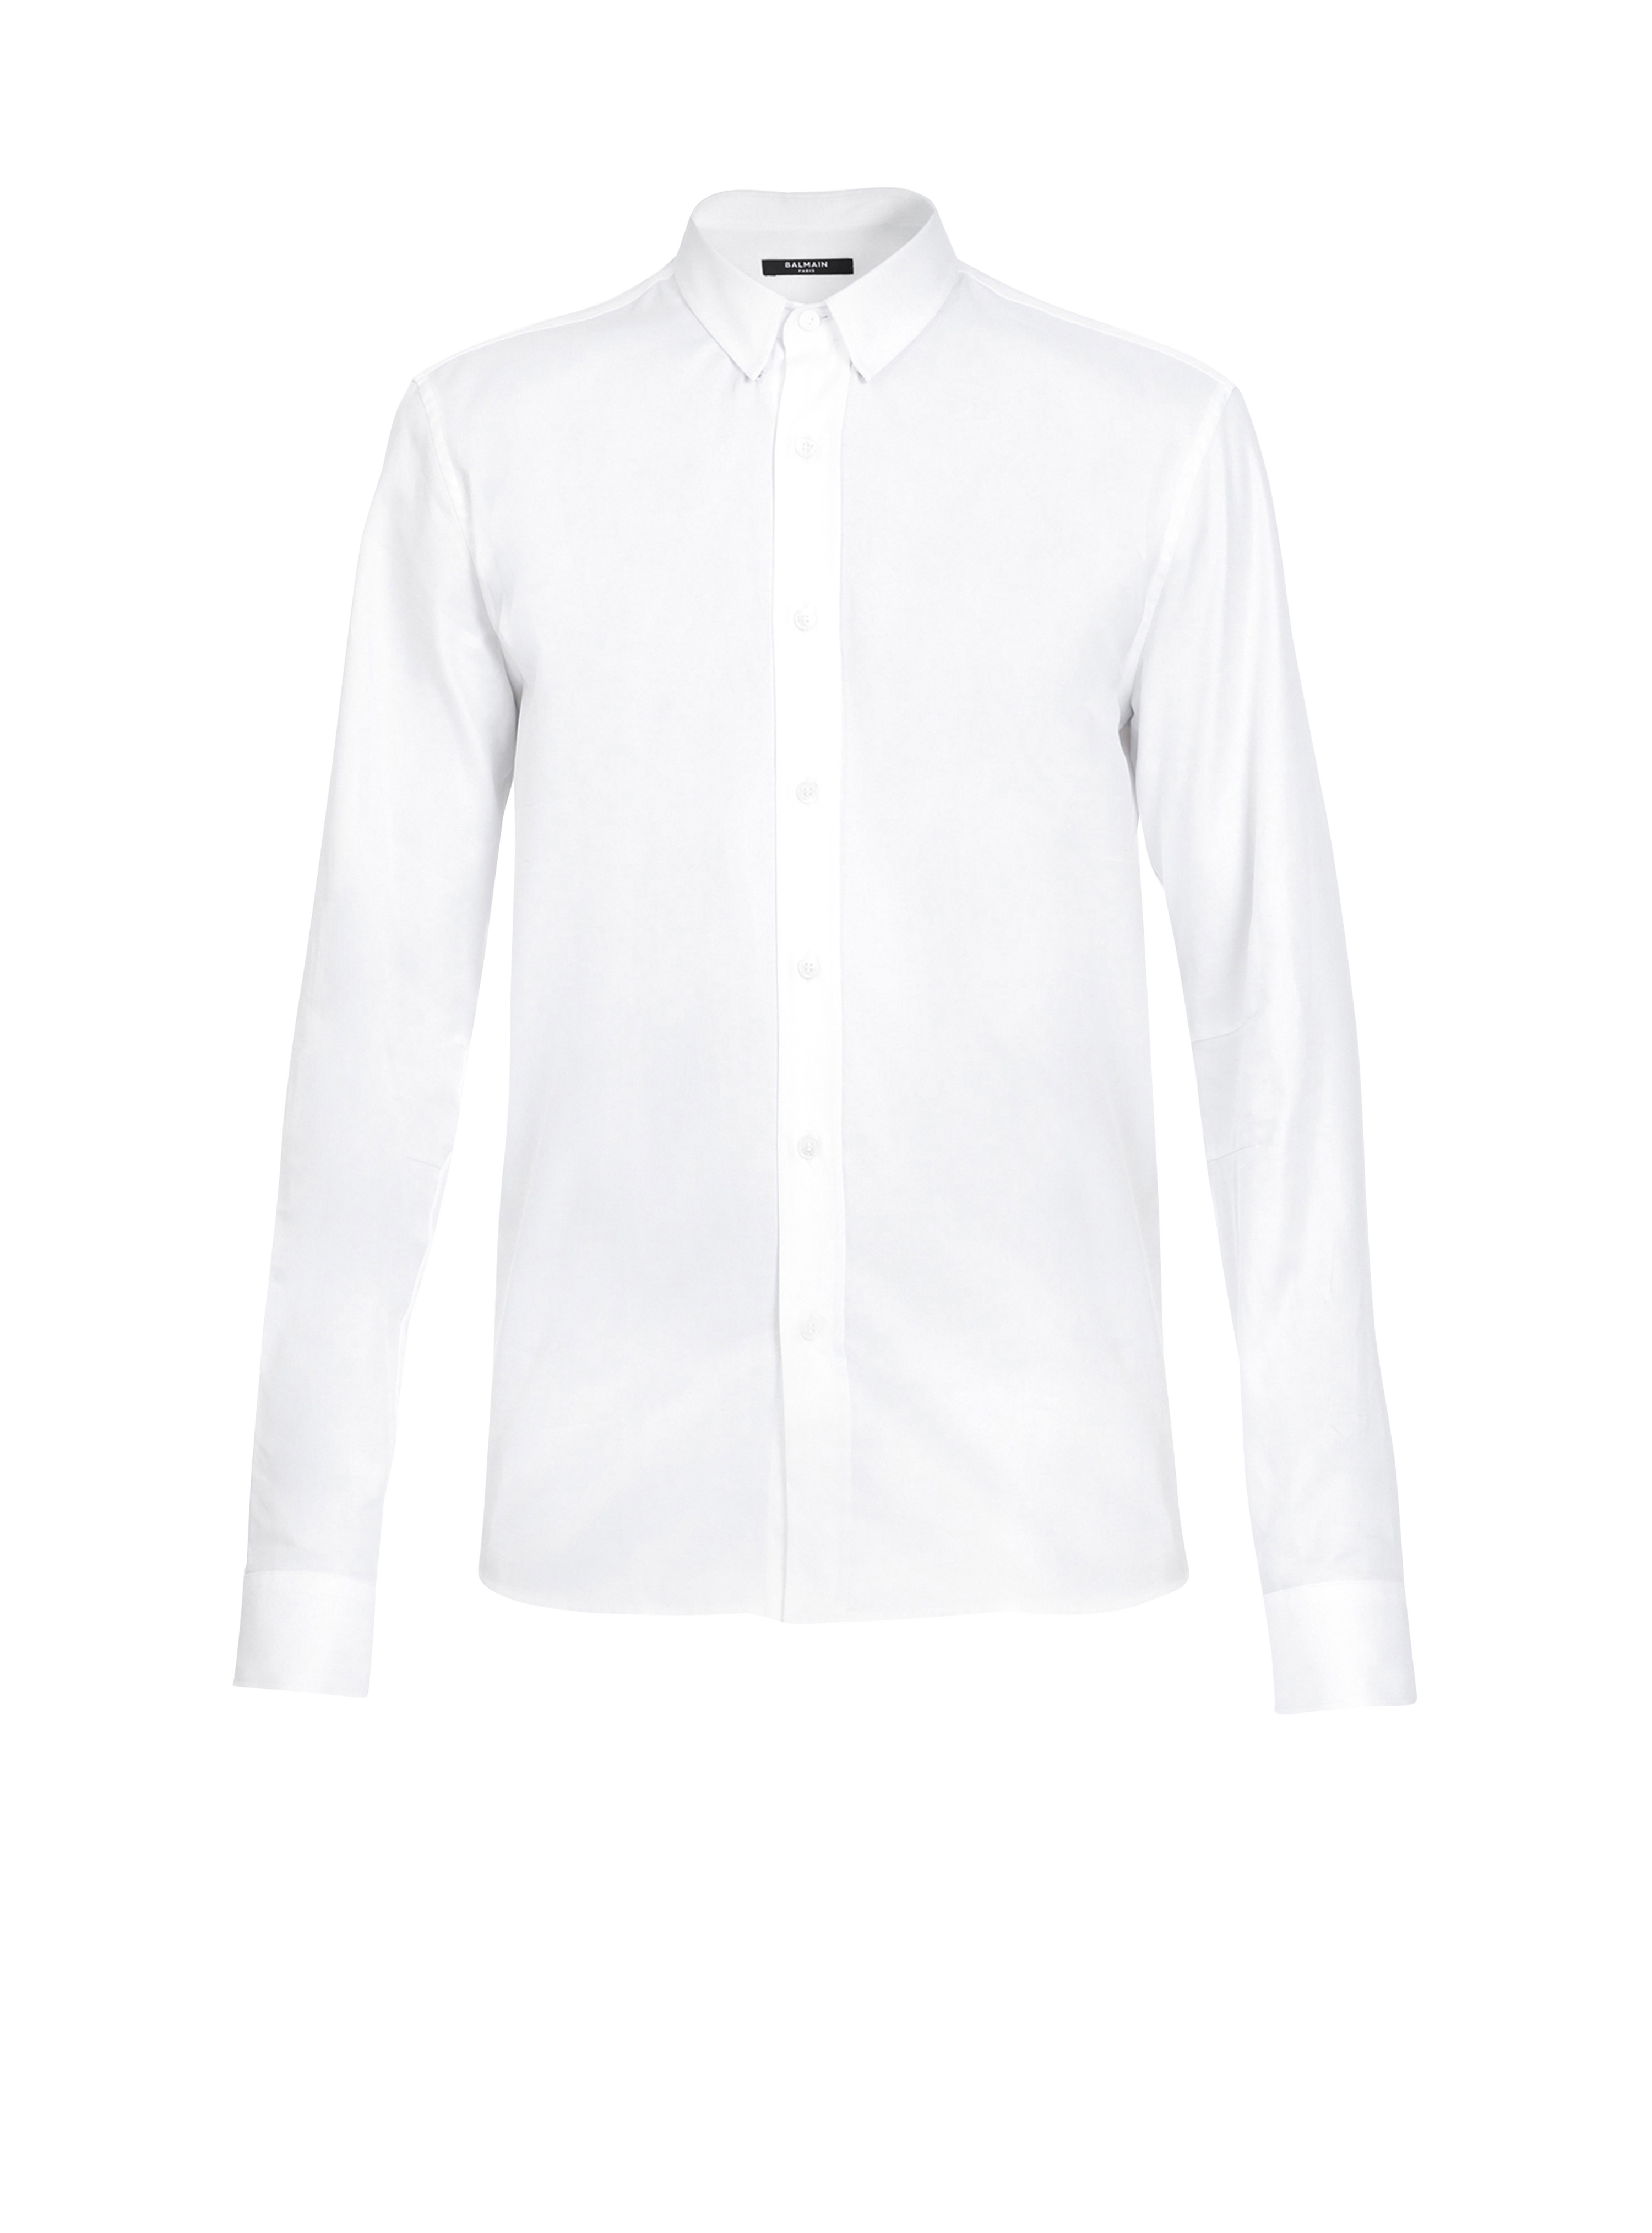 Camicia bianca aderente in cotone, bianco